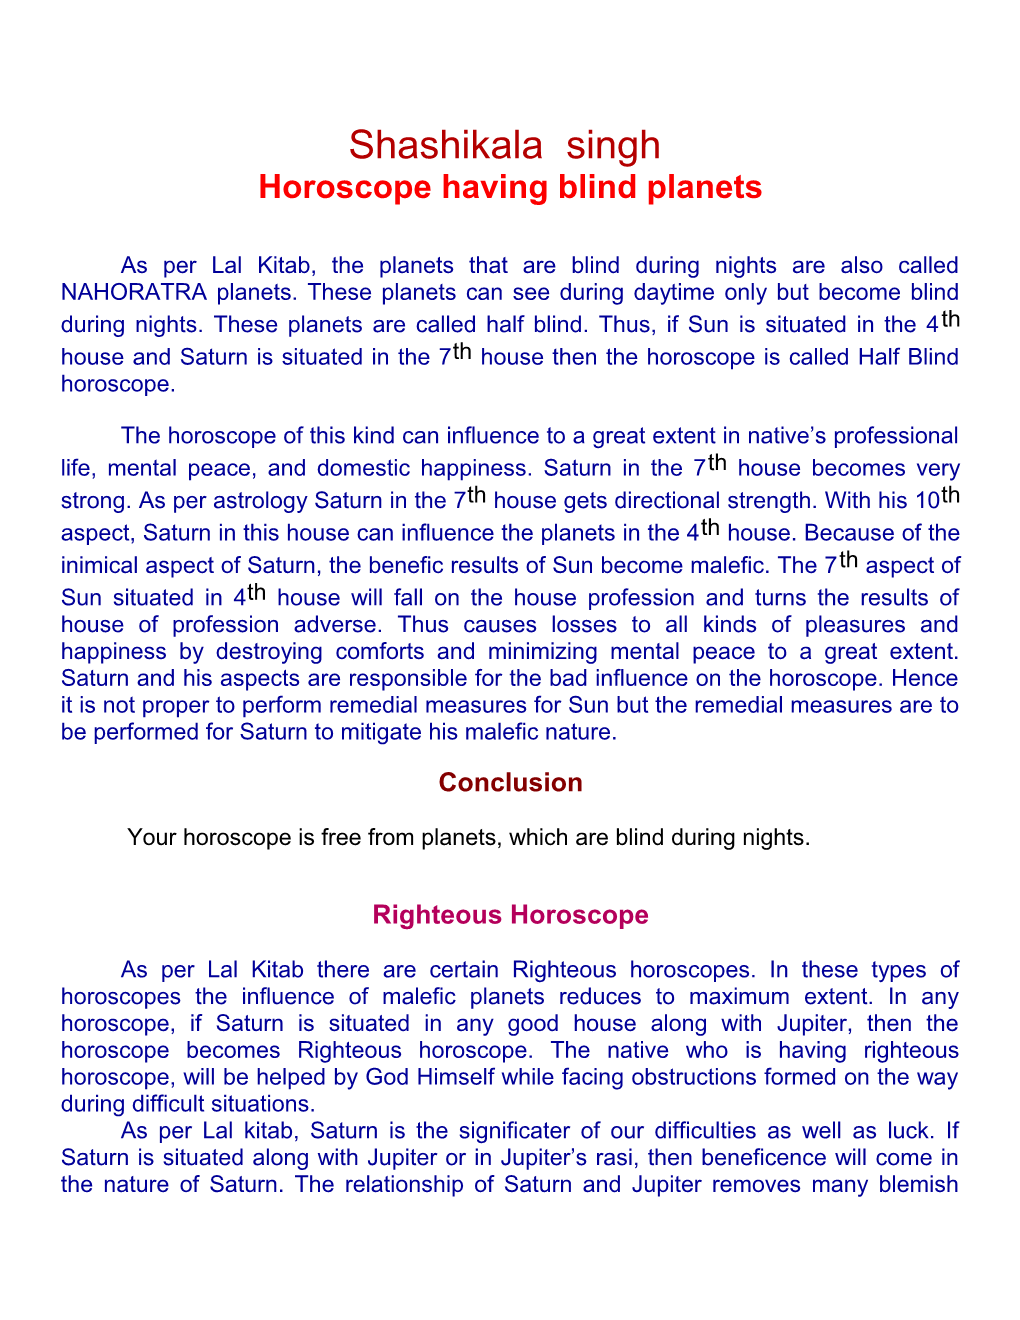 Horoscope Having Blind Planets